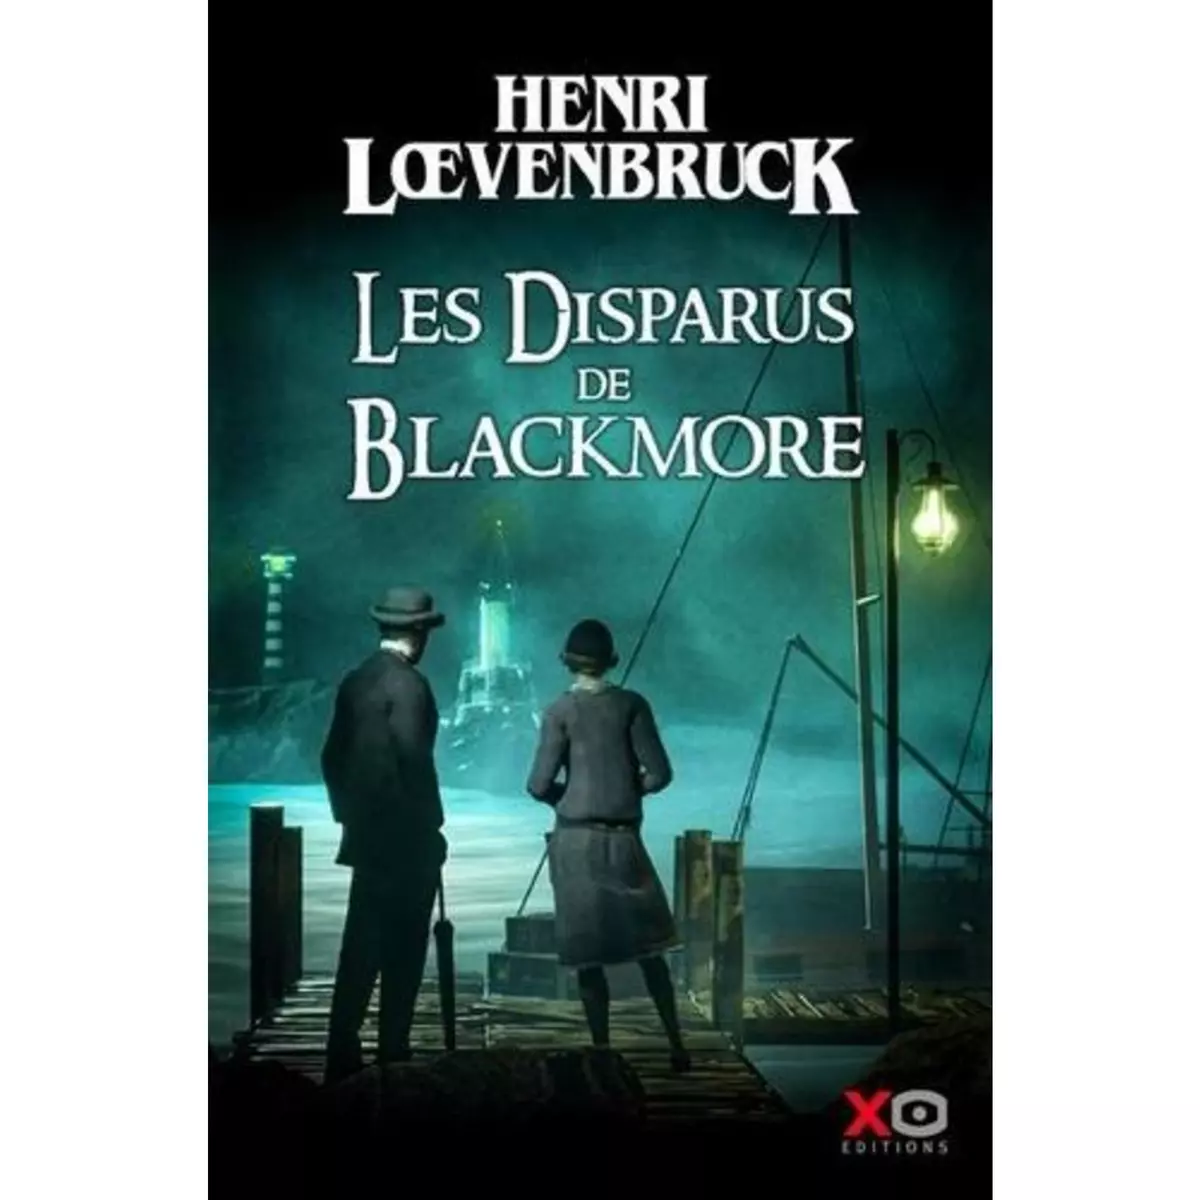  LES DISPARUS DE BLACKMORE, Loevenbruck Henri